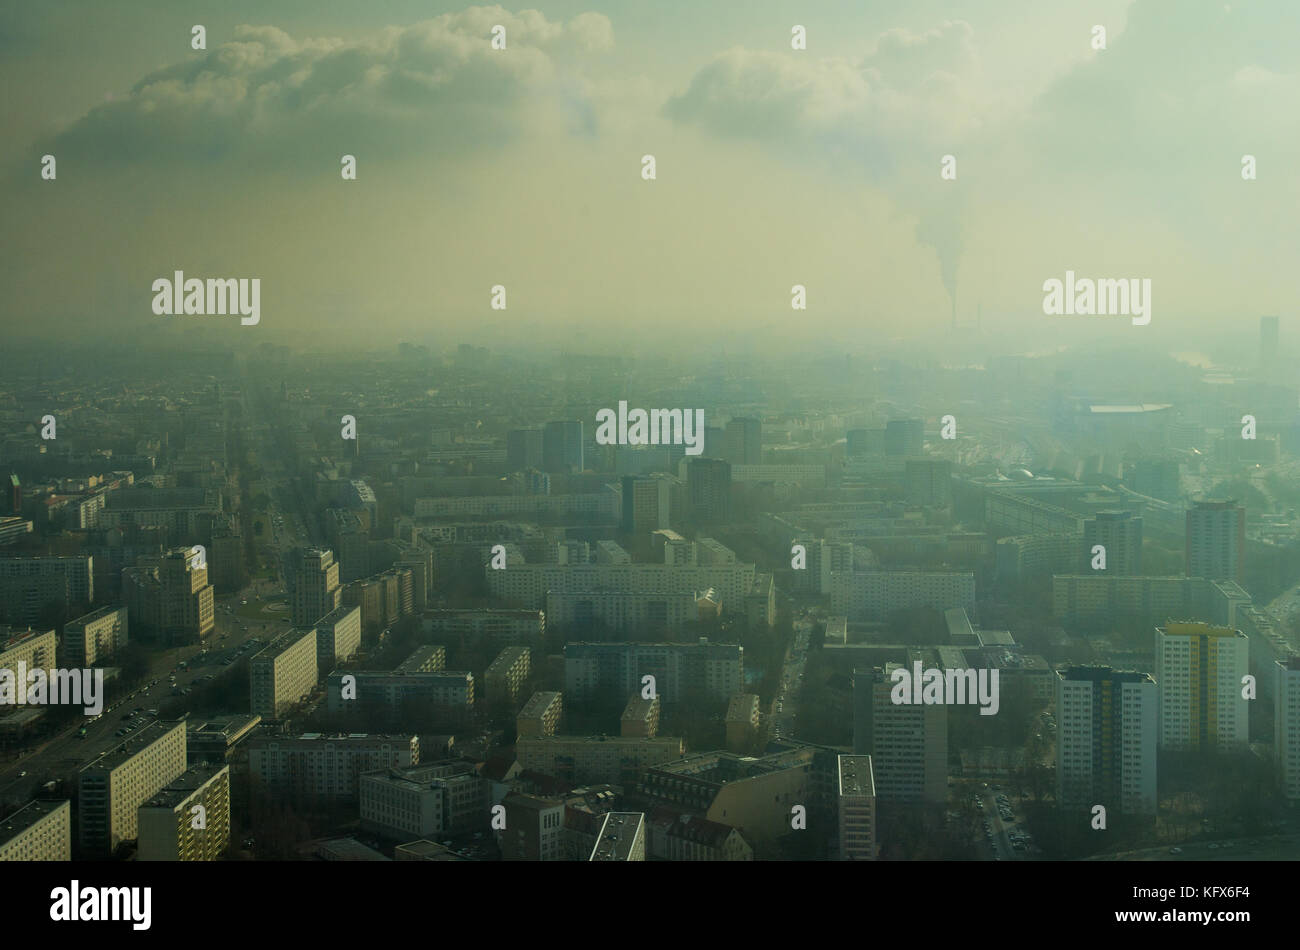 Una vista de Berlín llena de neblina desde la torre de televisión con edificios de varios pisos y una chimenea de fumar en la distancia. Parece una ciudad llena de humo. Foto de stock